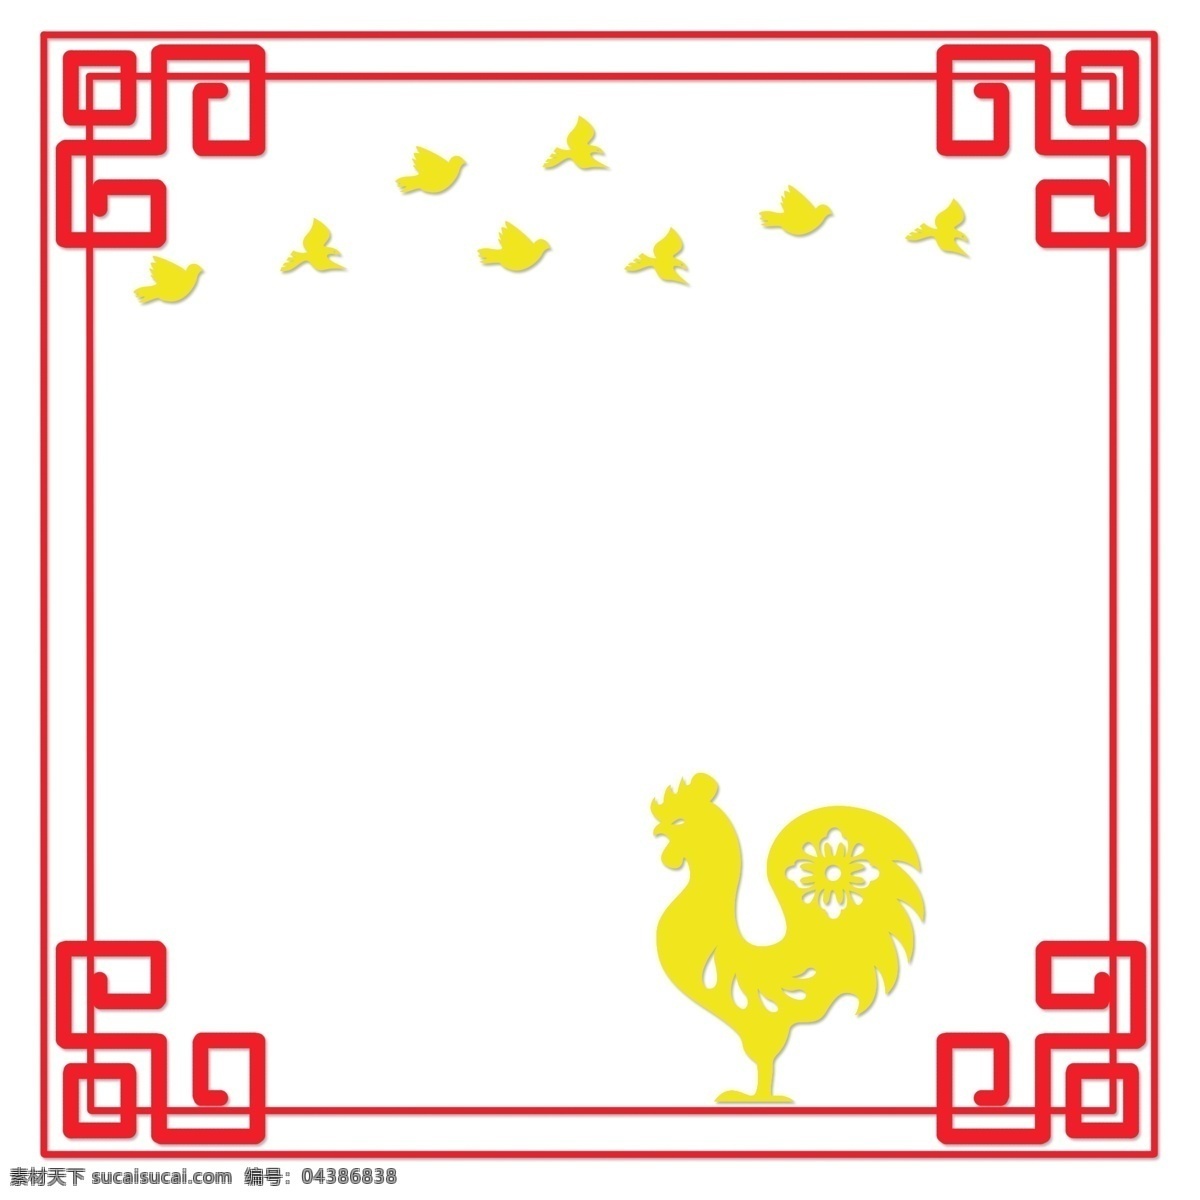 中国 风 古典 风格 扁平 边框 矢量图 十二生肖 中国风 古典风格 扁平风 简约 古风手绘 矢量套图 红色 黄色 古风 鸡